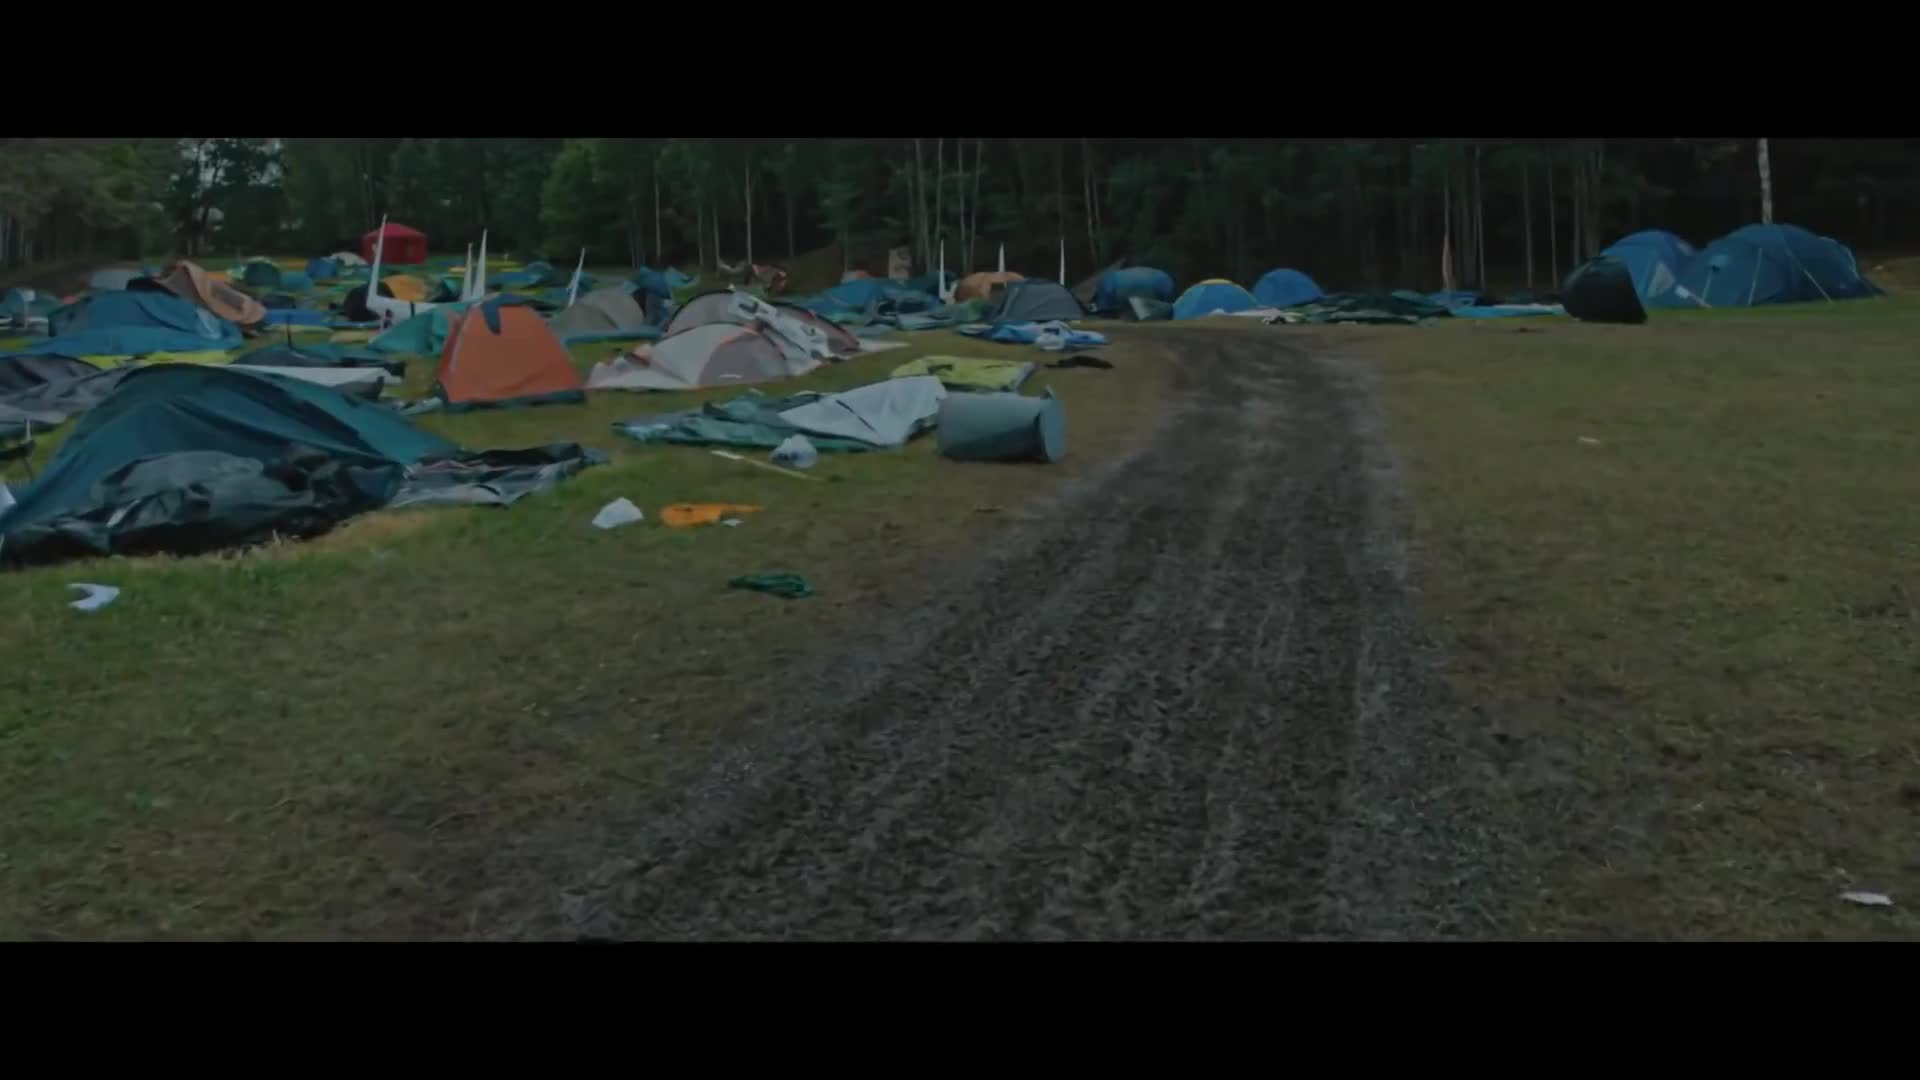 Utøya, 22. července: Trailer